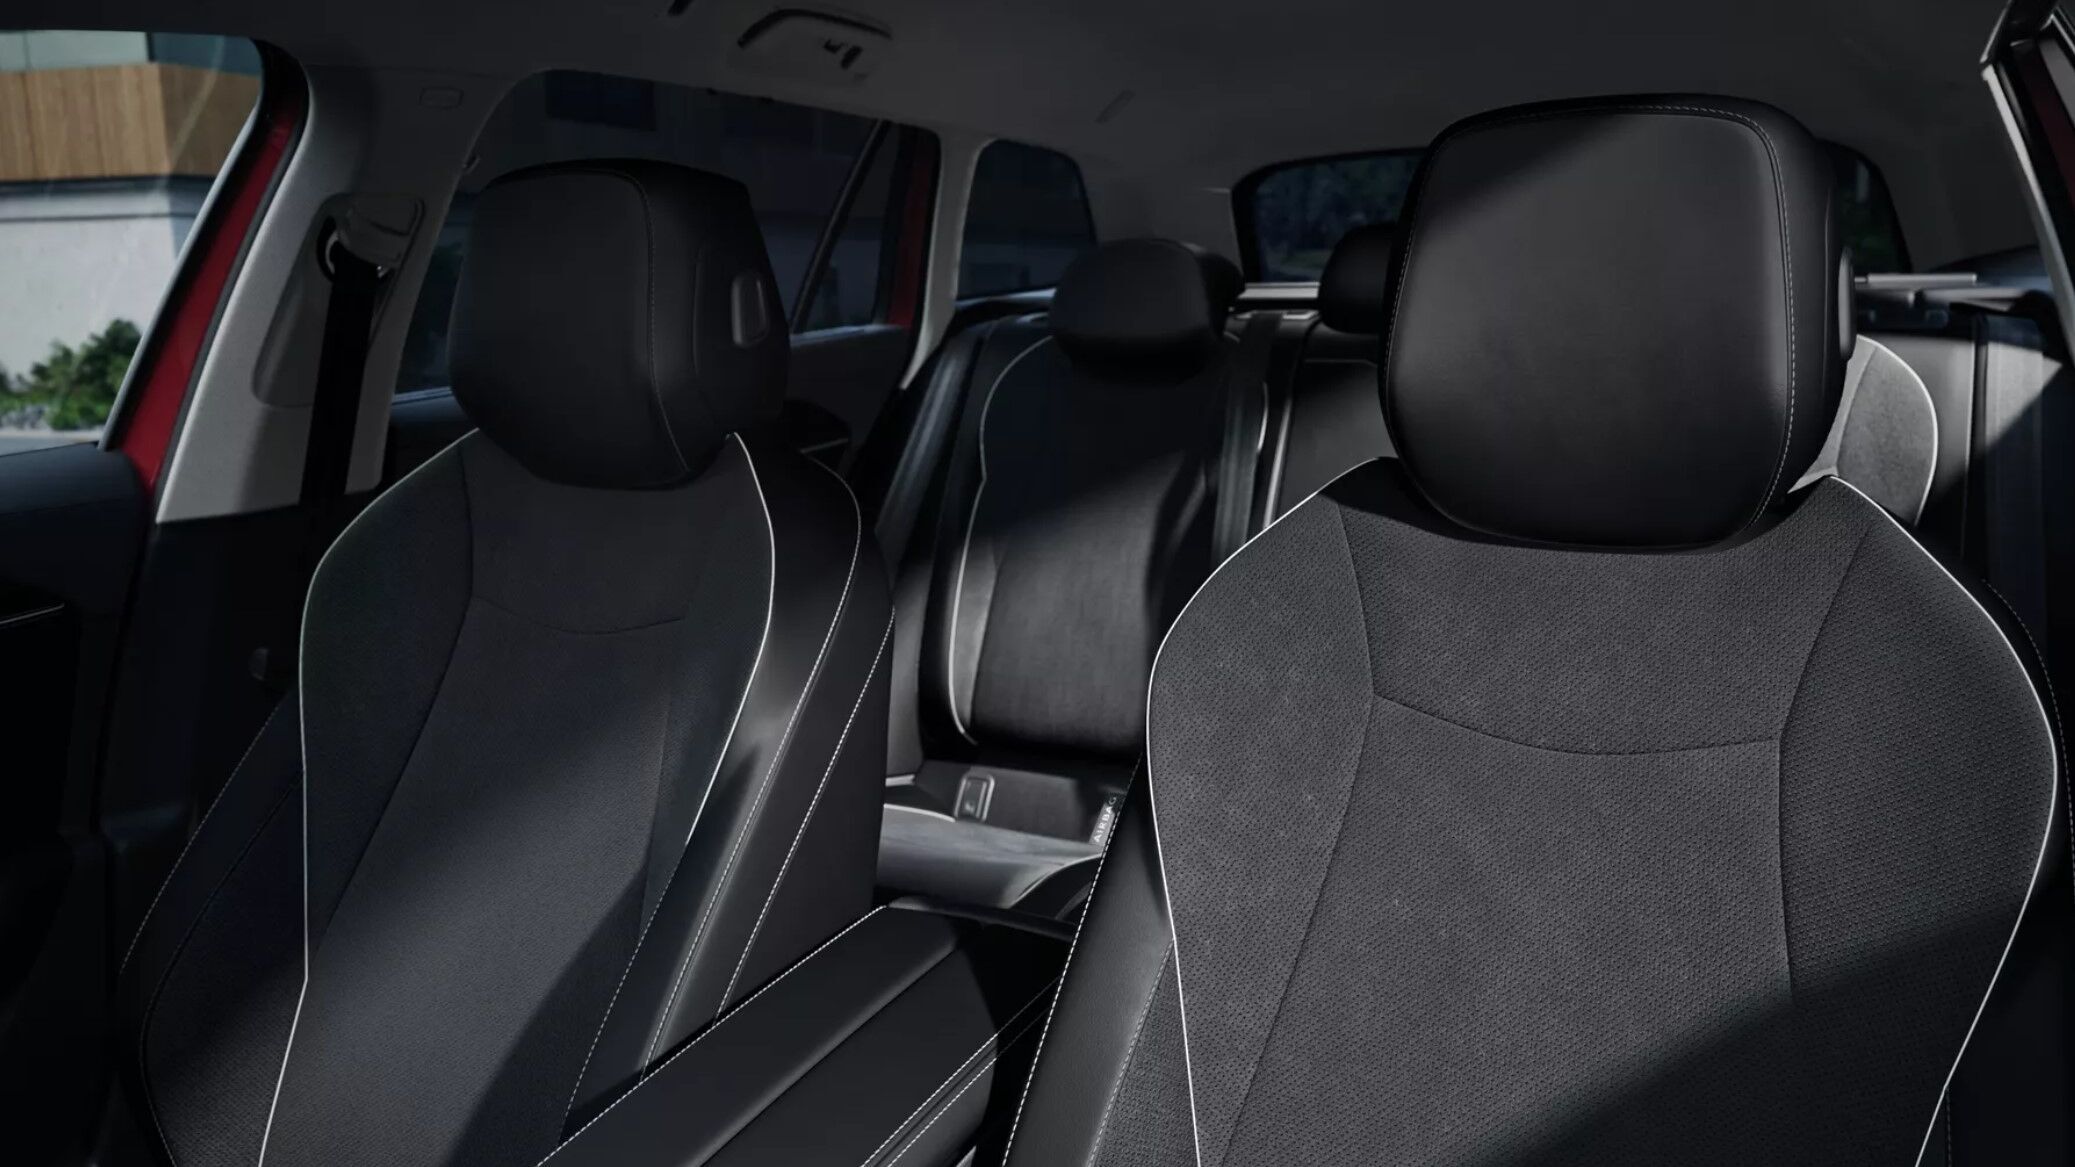 VW Passat Sitze in schwarz